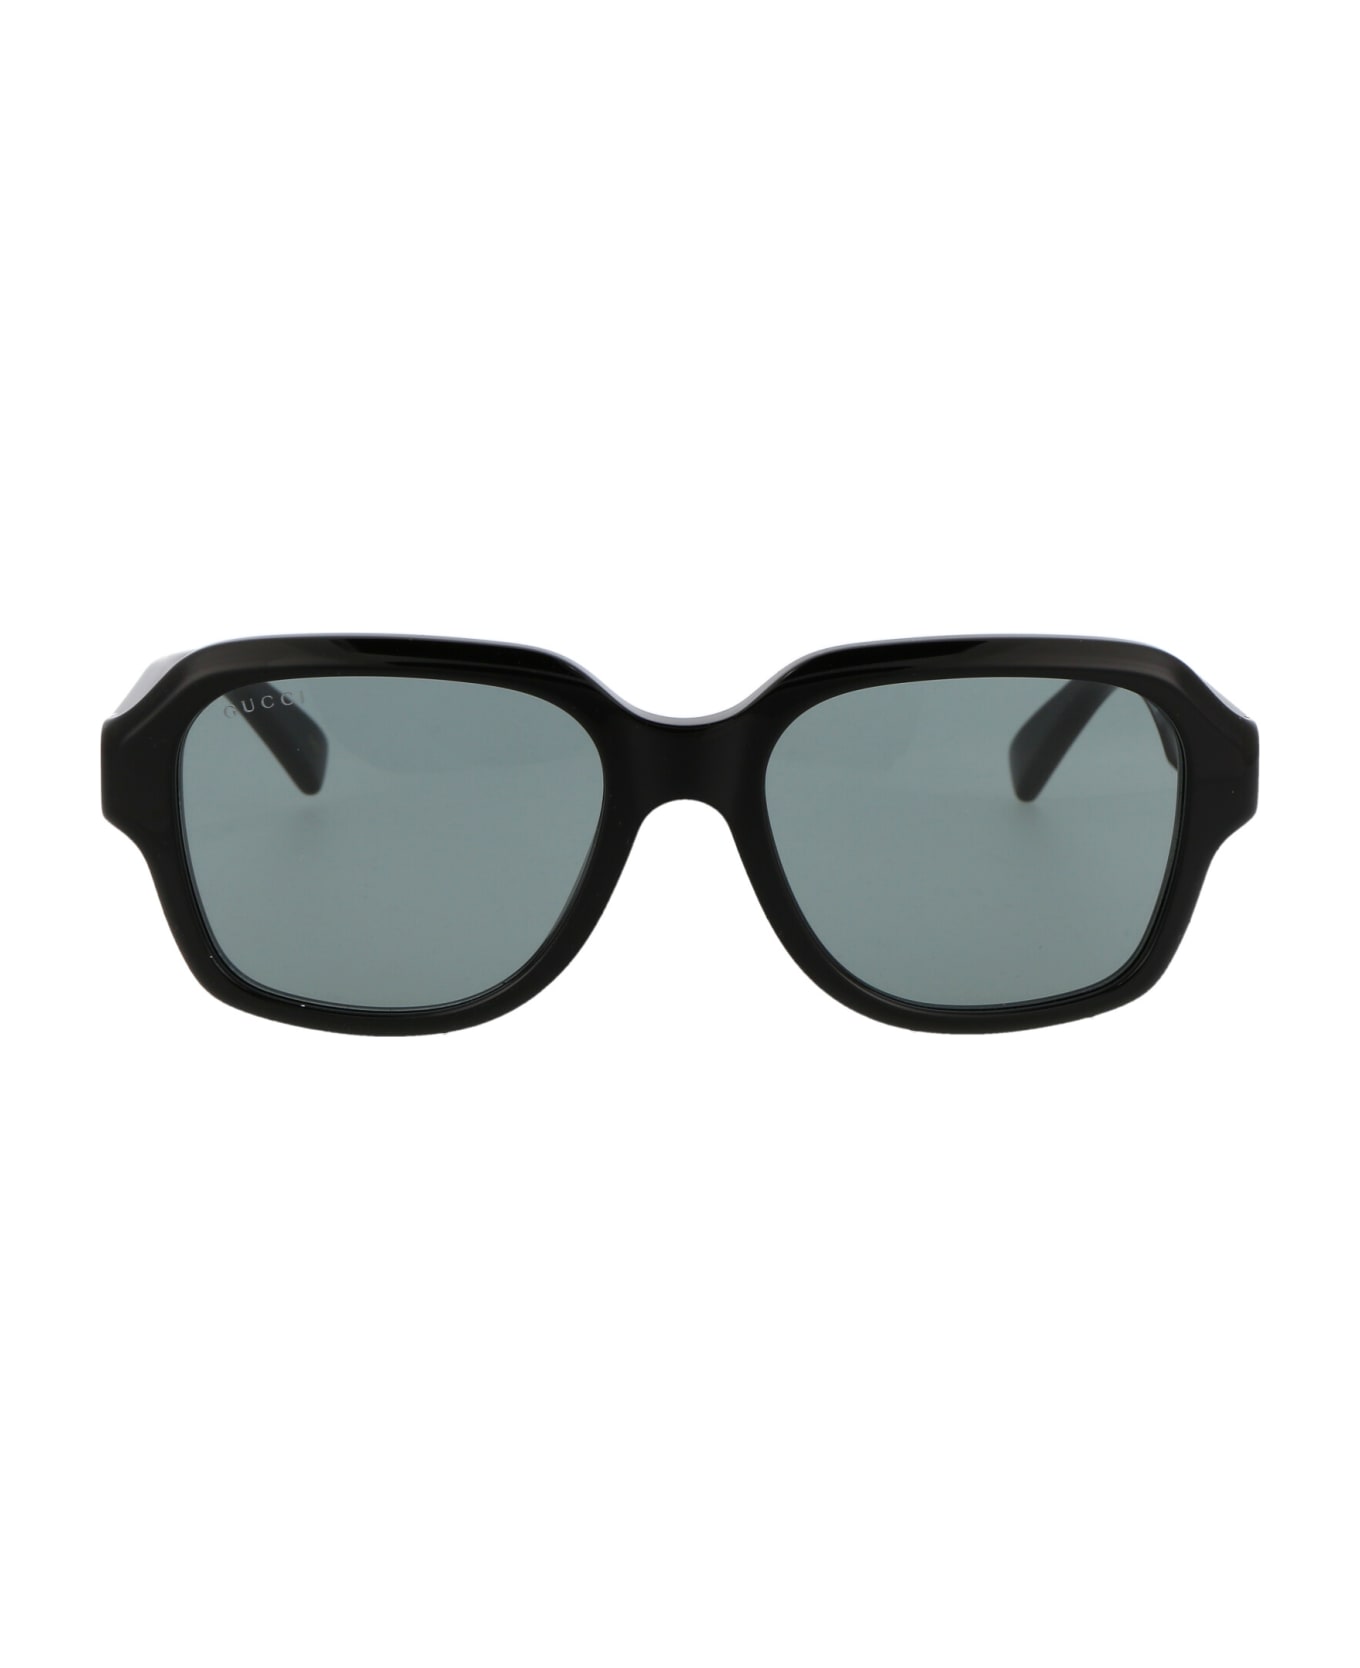 Gucci Eyewear Gg1174s Sunglasses - 001 BLACK BLACK SMOKE サングラス